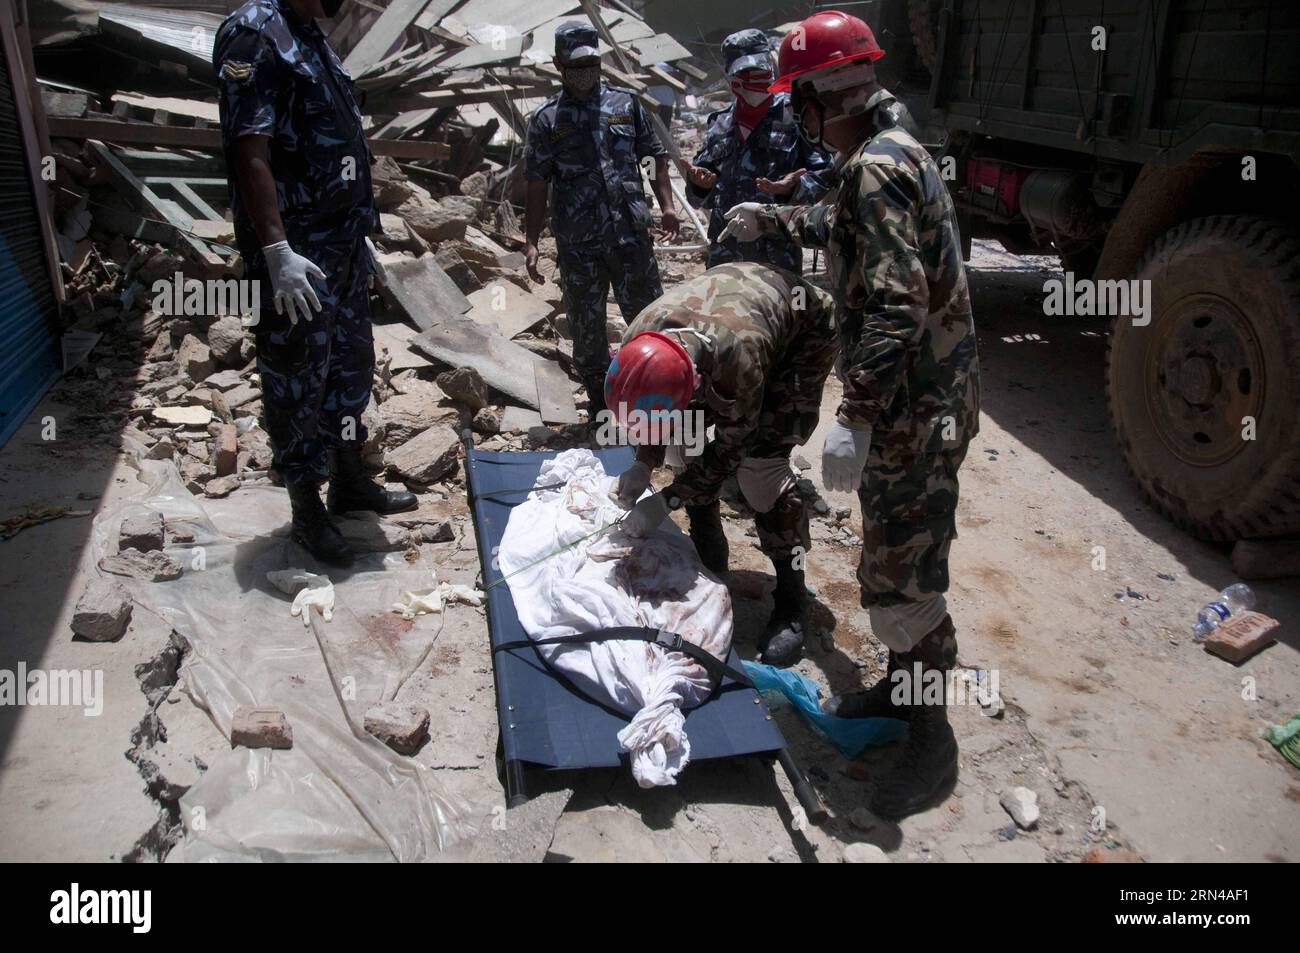 (150514) -- DOLAKHA, 14. Mai 2015 -- nepalesische Soldaten finden die Leiche eines Erdbebenopfers im Bezirk Dolakha, etwa 130 km östlich von Kathmandu, Nepal, 14. Mai 2015. Die Zahl der Todesopfer in einem neuen starken Beben, das Nepal am Dienstag getroffen hat, ist auf 96 gestiegen und rund 2.563 andere verletzt, sagte die Nepal Polizei in ihrem neuesten Update am Donnerstag. ) NEPAL-DOLAKHA-ERDBEBEN-OPFER PratapxThapa PUBLICATIONxNOTxINxCHN 150514 Dolakha 14. Mai 2015 Mitarbeiter der nepalesischen Armee finden die Leiche des Erdbebenopfers im Dolakha-Bezirk etwa 130 km östlich von Kathmandu Nepal 14. Mai 2015 die Todesopfer in einem Fresh Pow Stockfoto